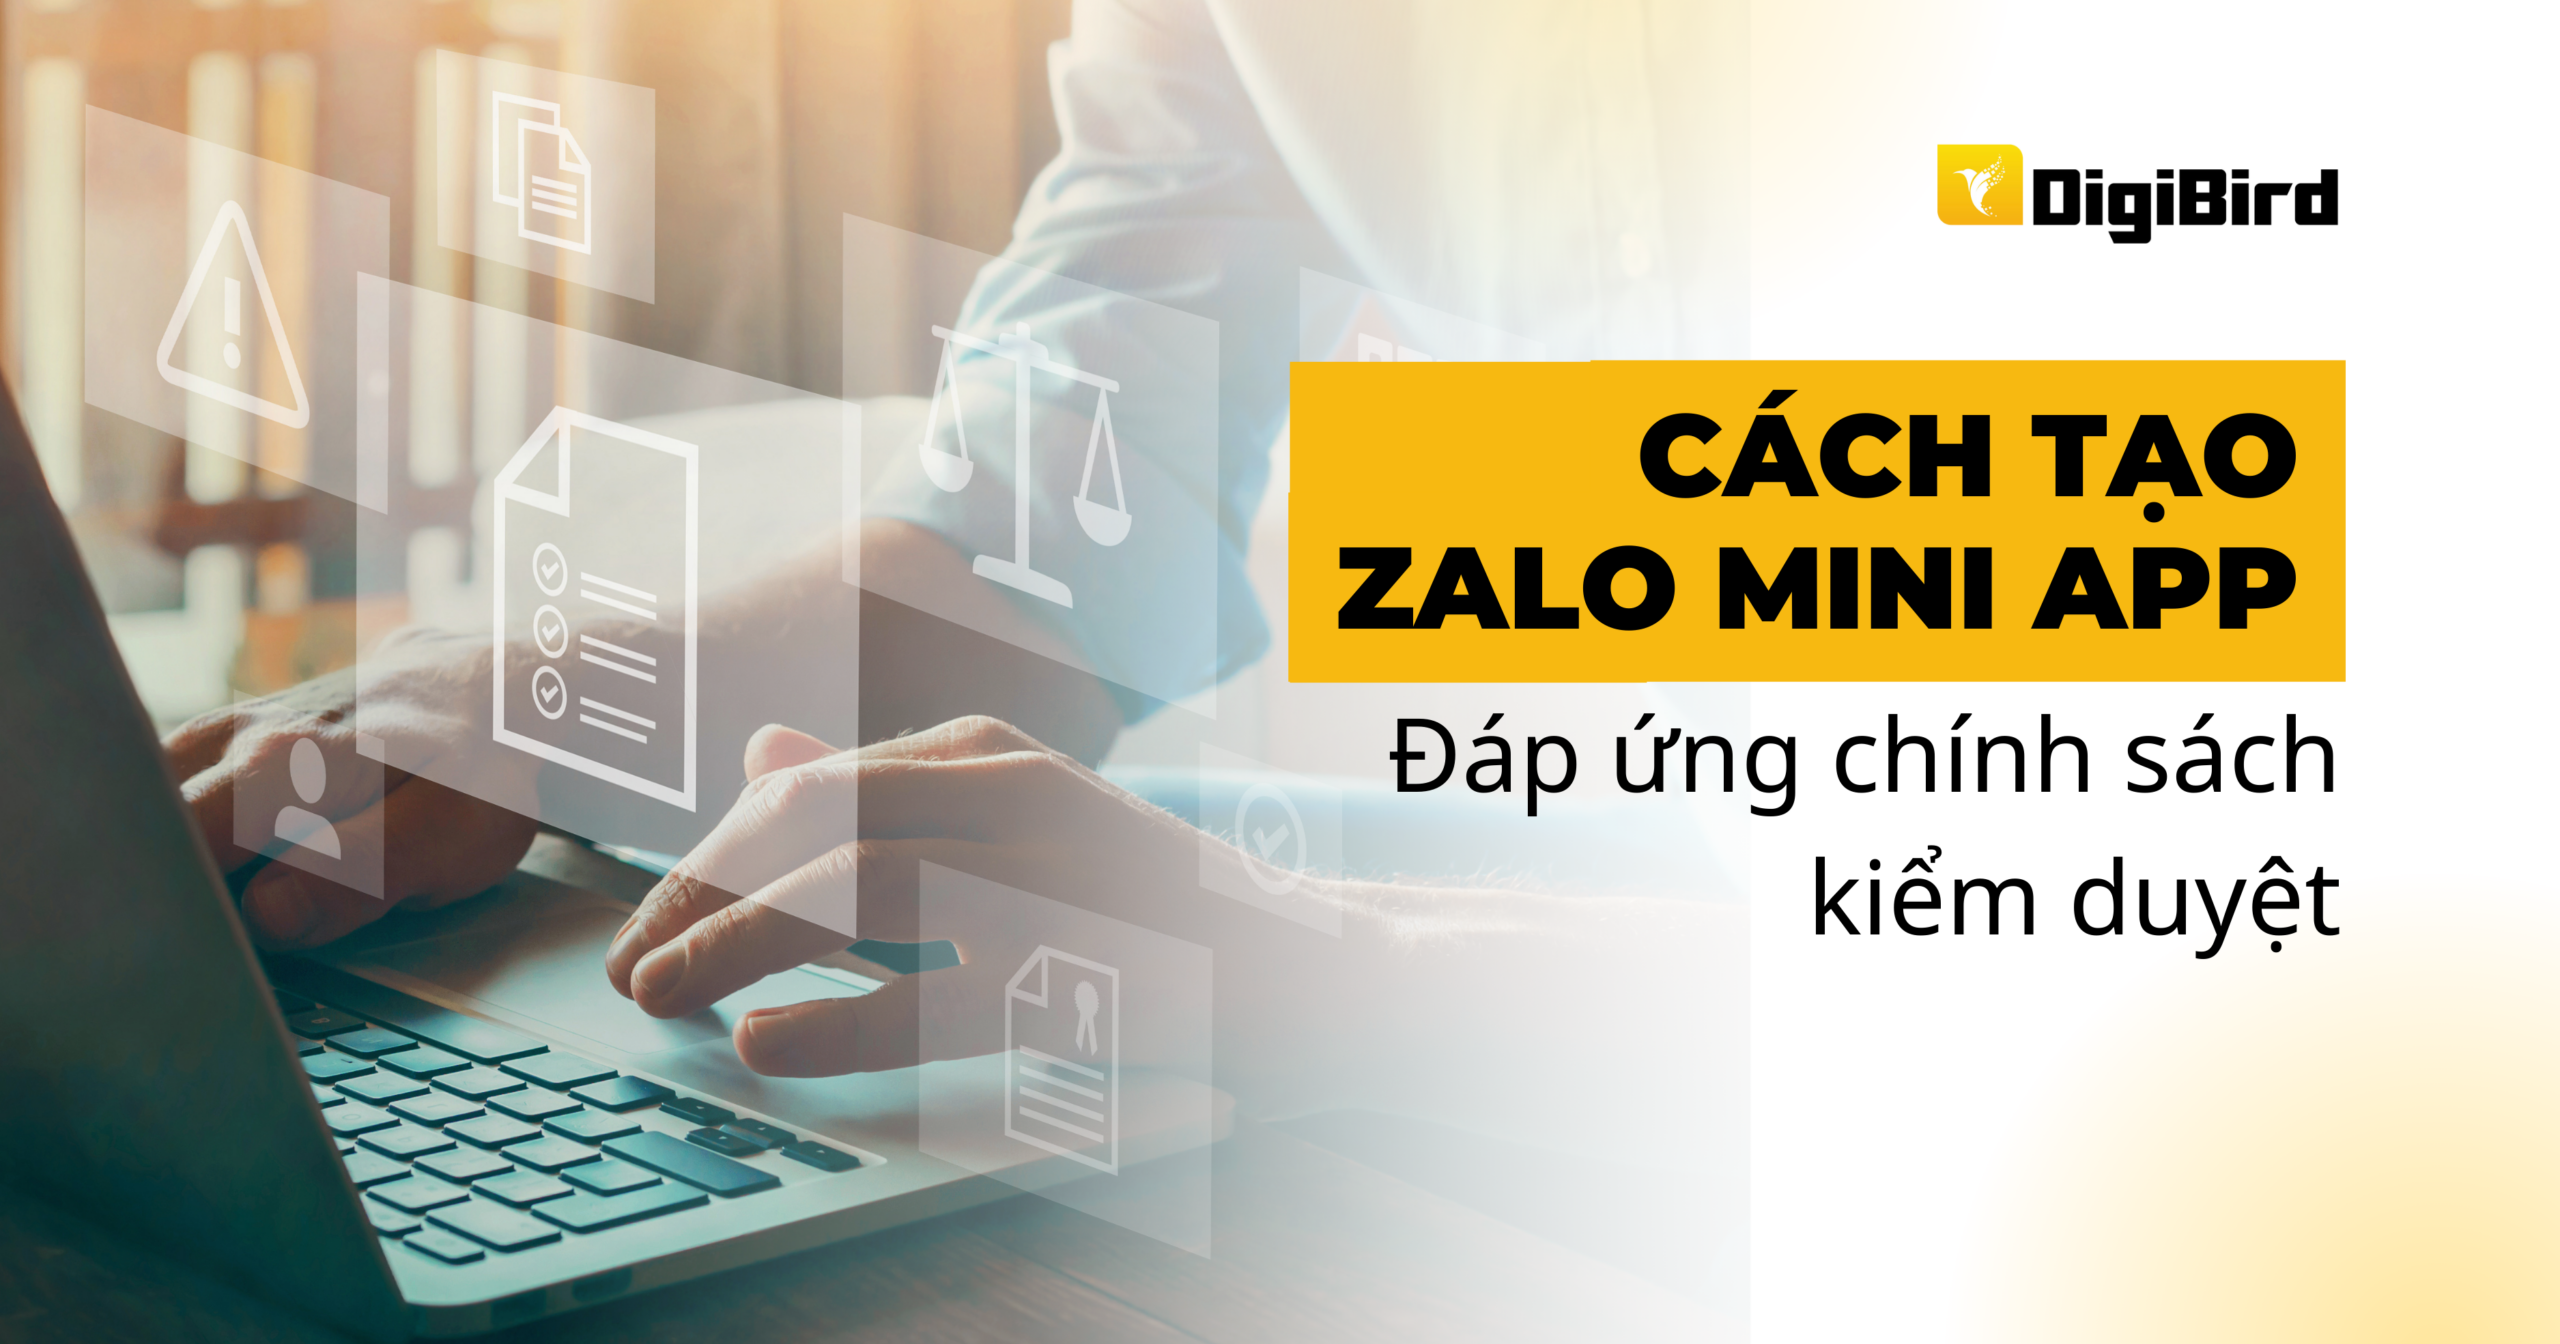 Cách tạo Zalo Mini App đáp ứng chính sách kiểm duyệt